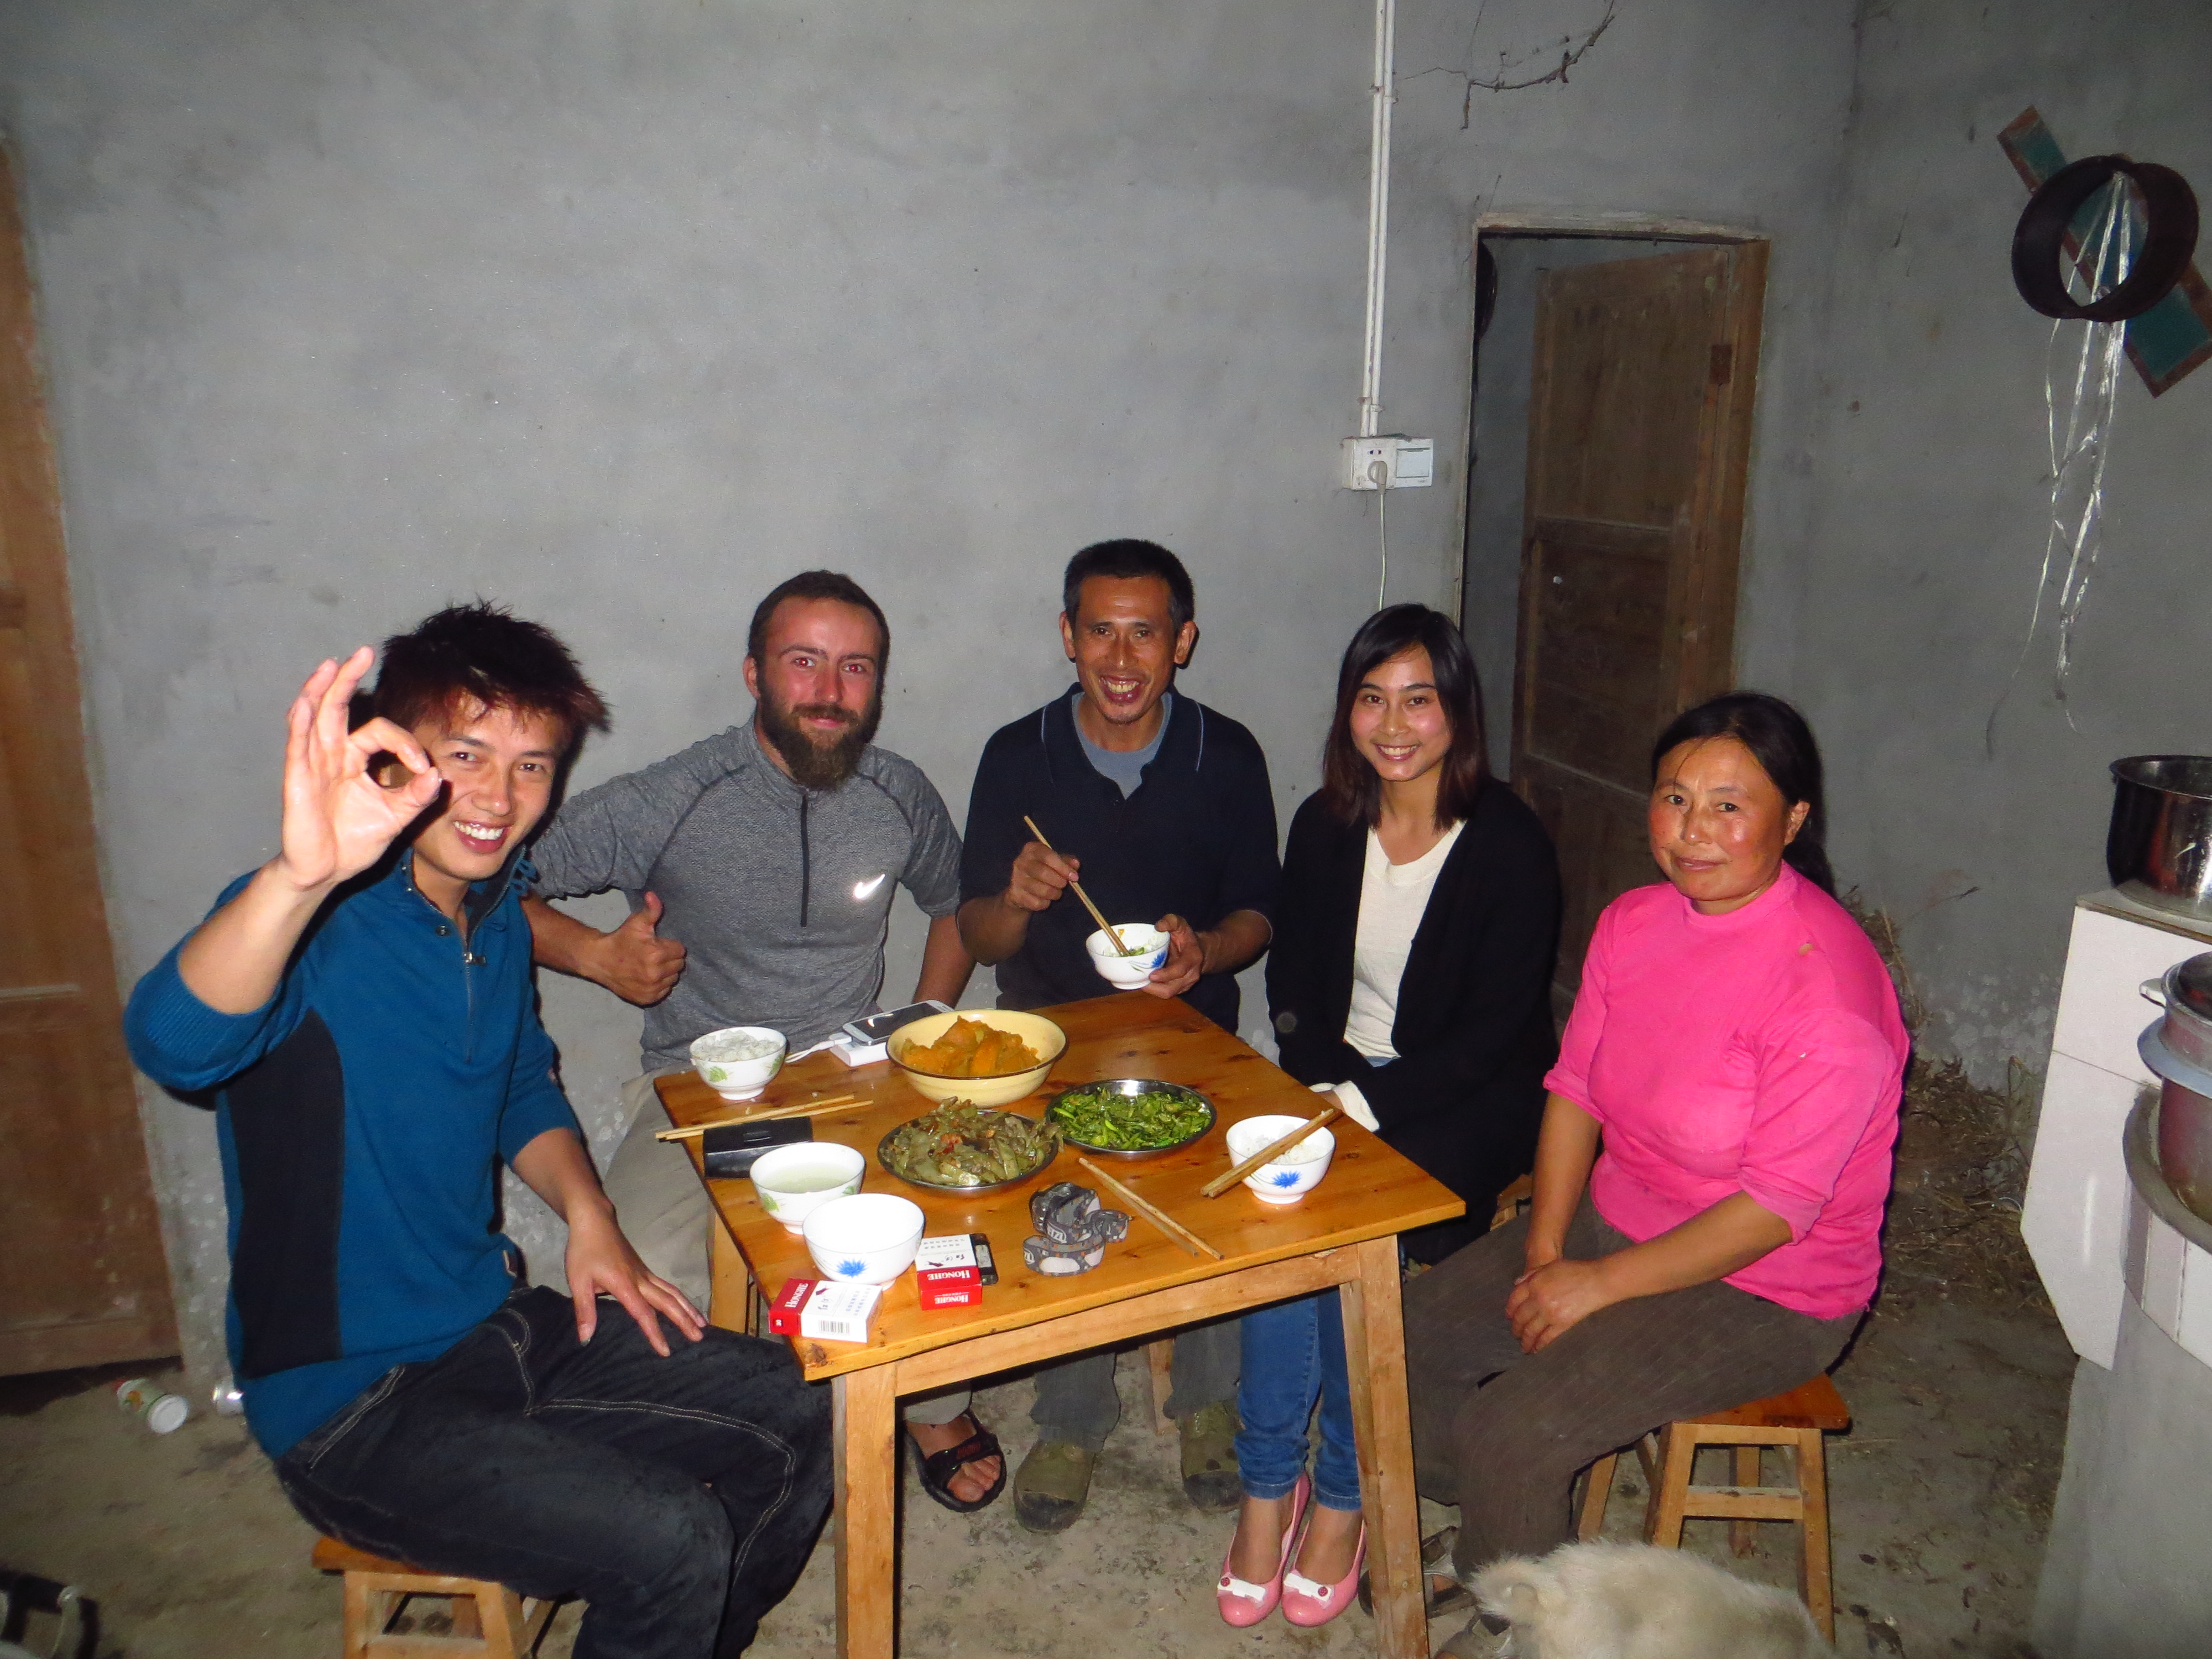 Liao nous trouve une place d'enfer dans un champ en Chine. La famille nous invite alors autour de leur table pour partager leur repas !!